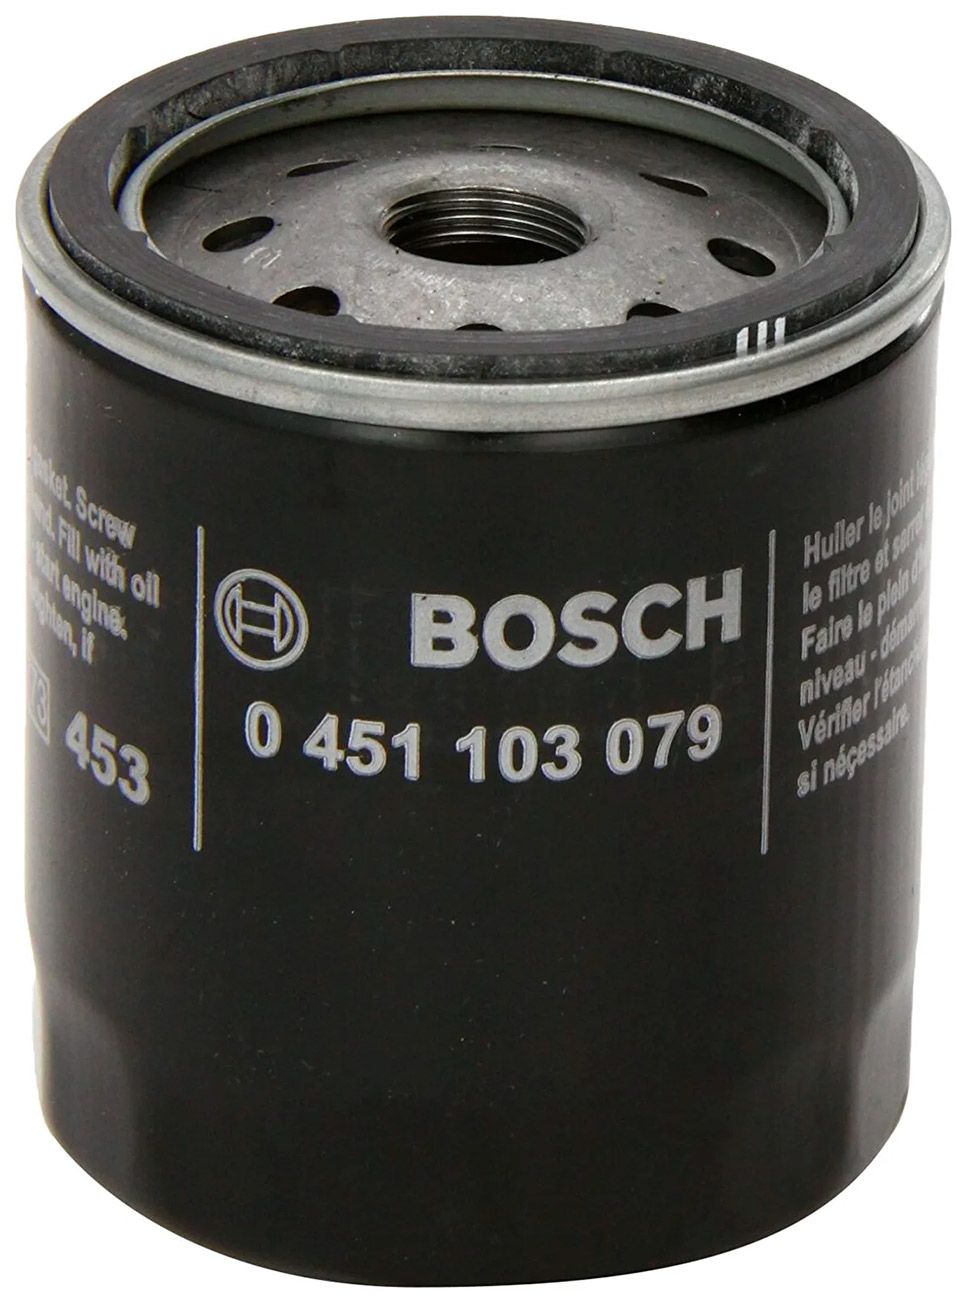 Фильтр масляный "BOSCH" (0 451 103 079) для Шевроле Нива (двигатель OPEL Z18XE)